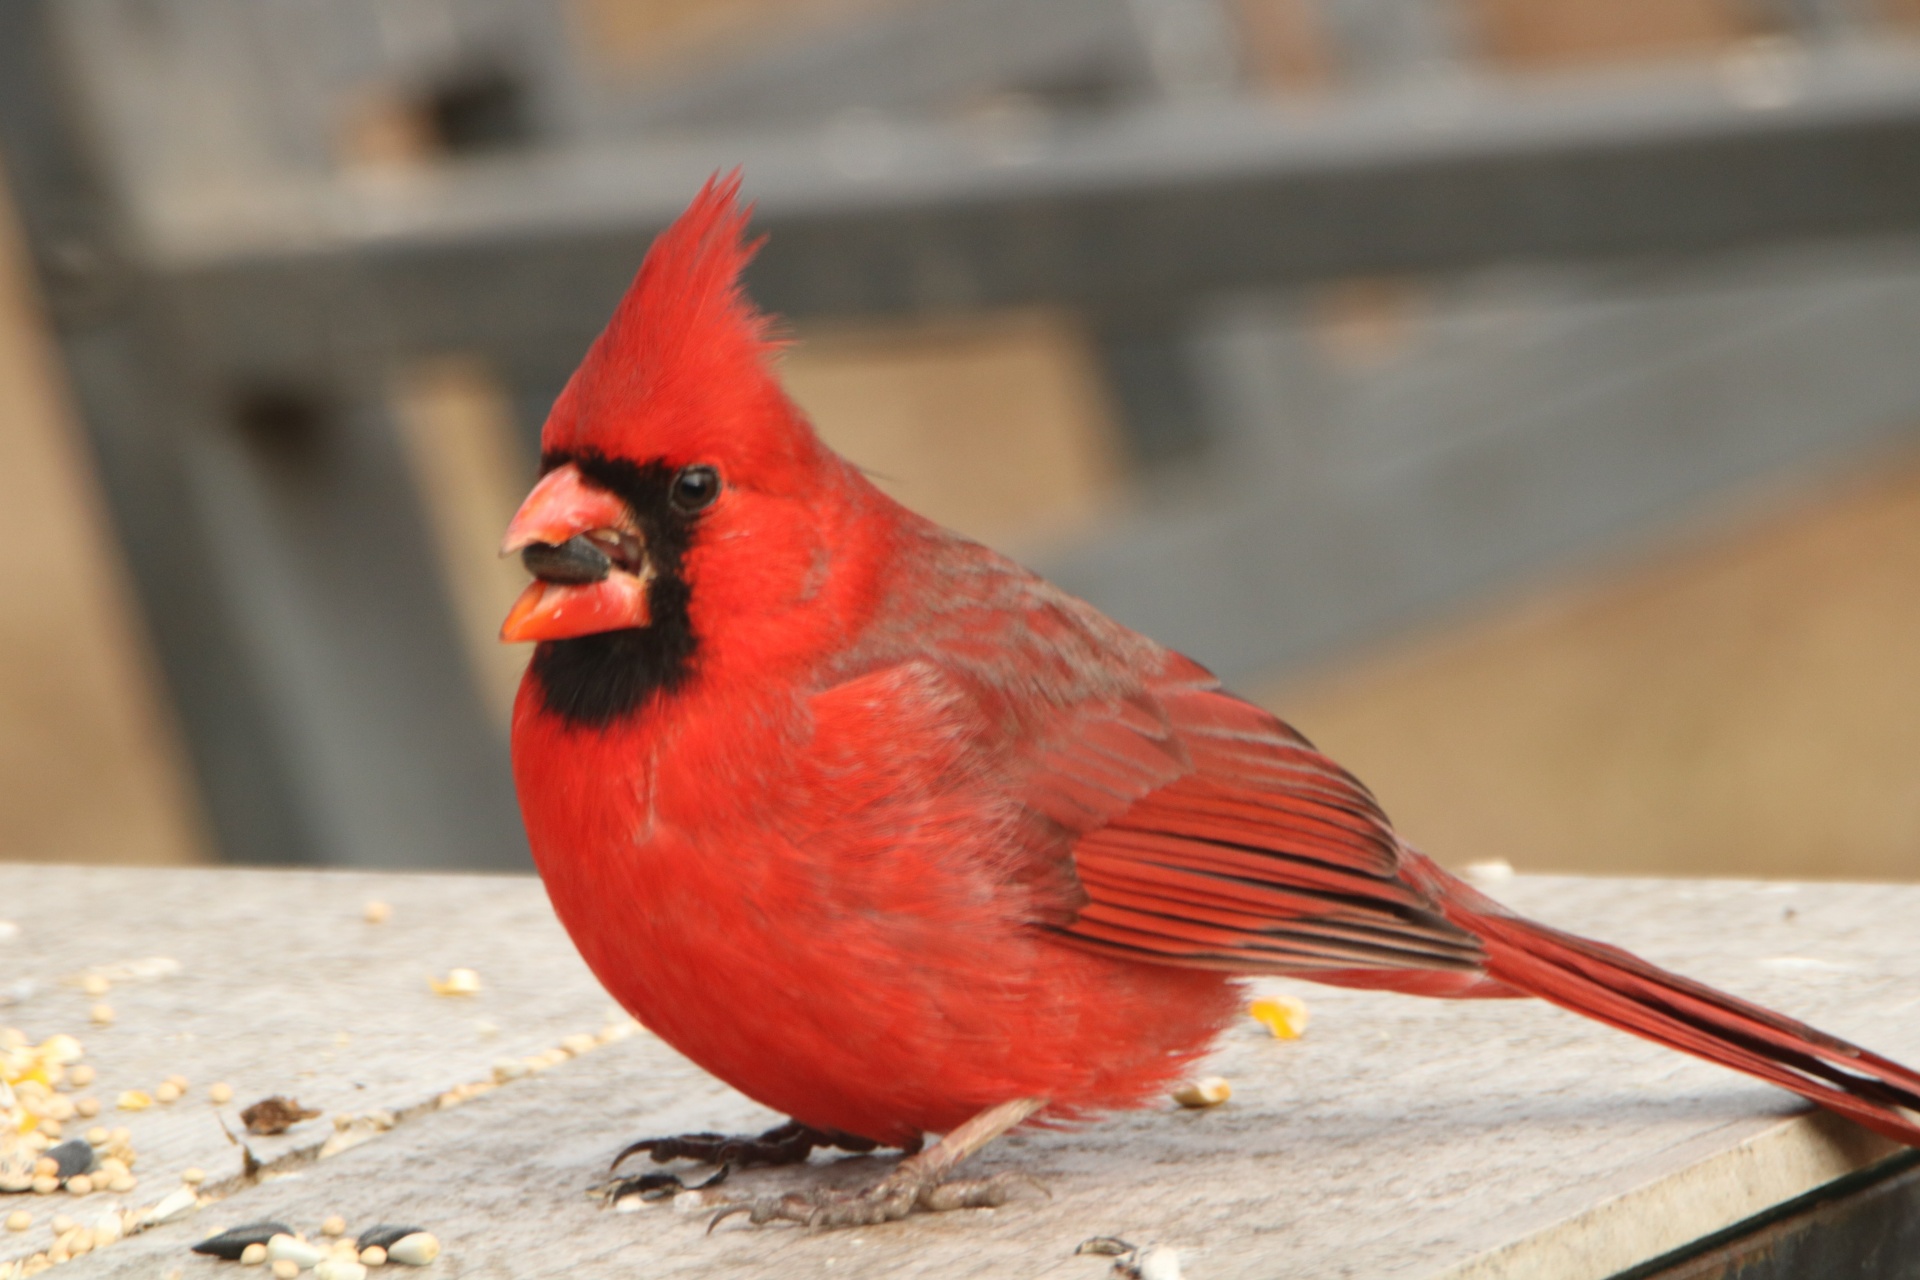 Male Cardinal Bird On Table